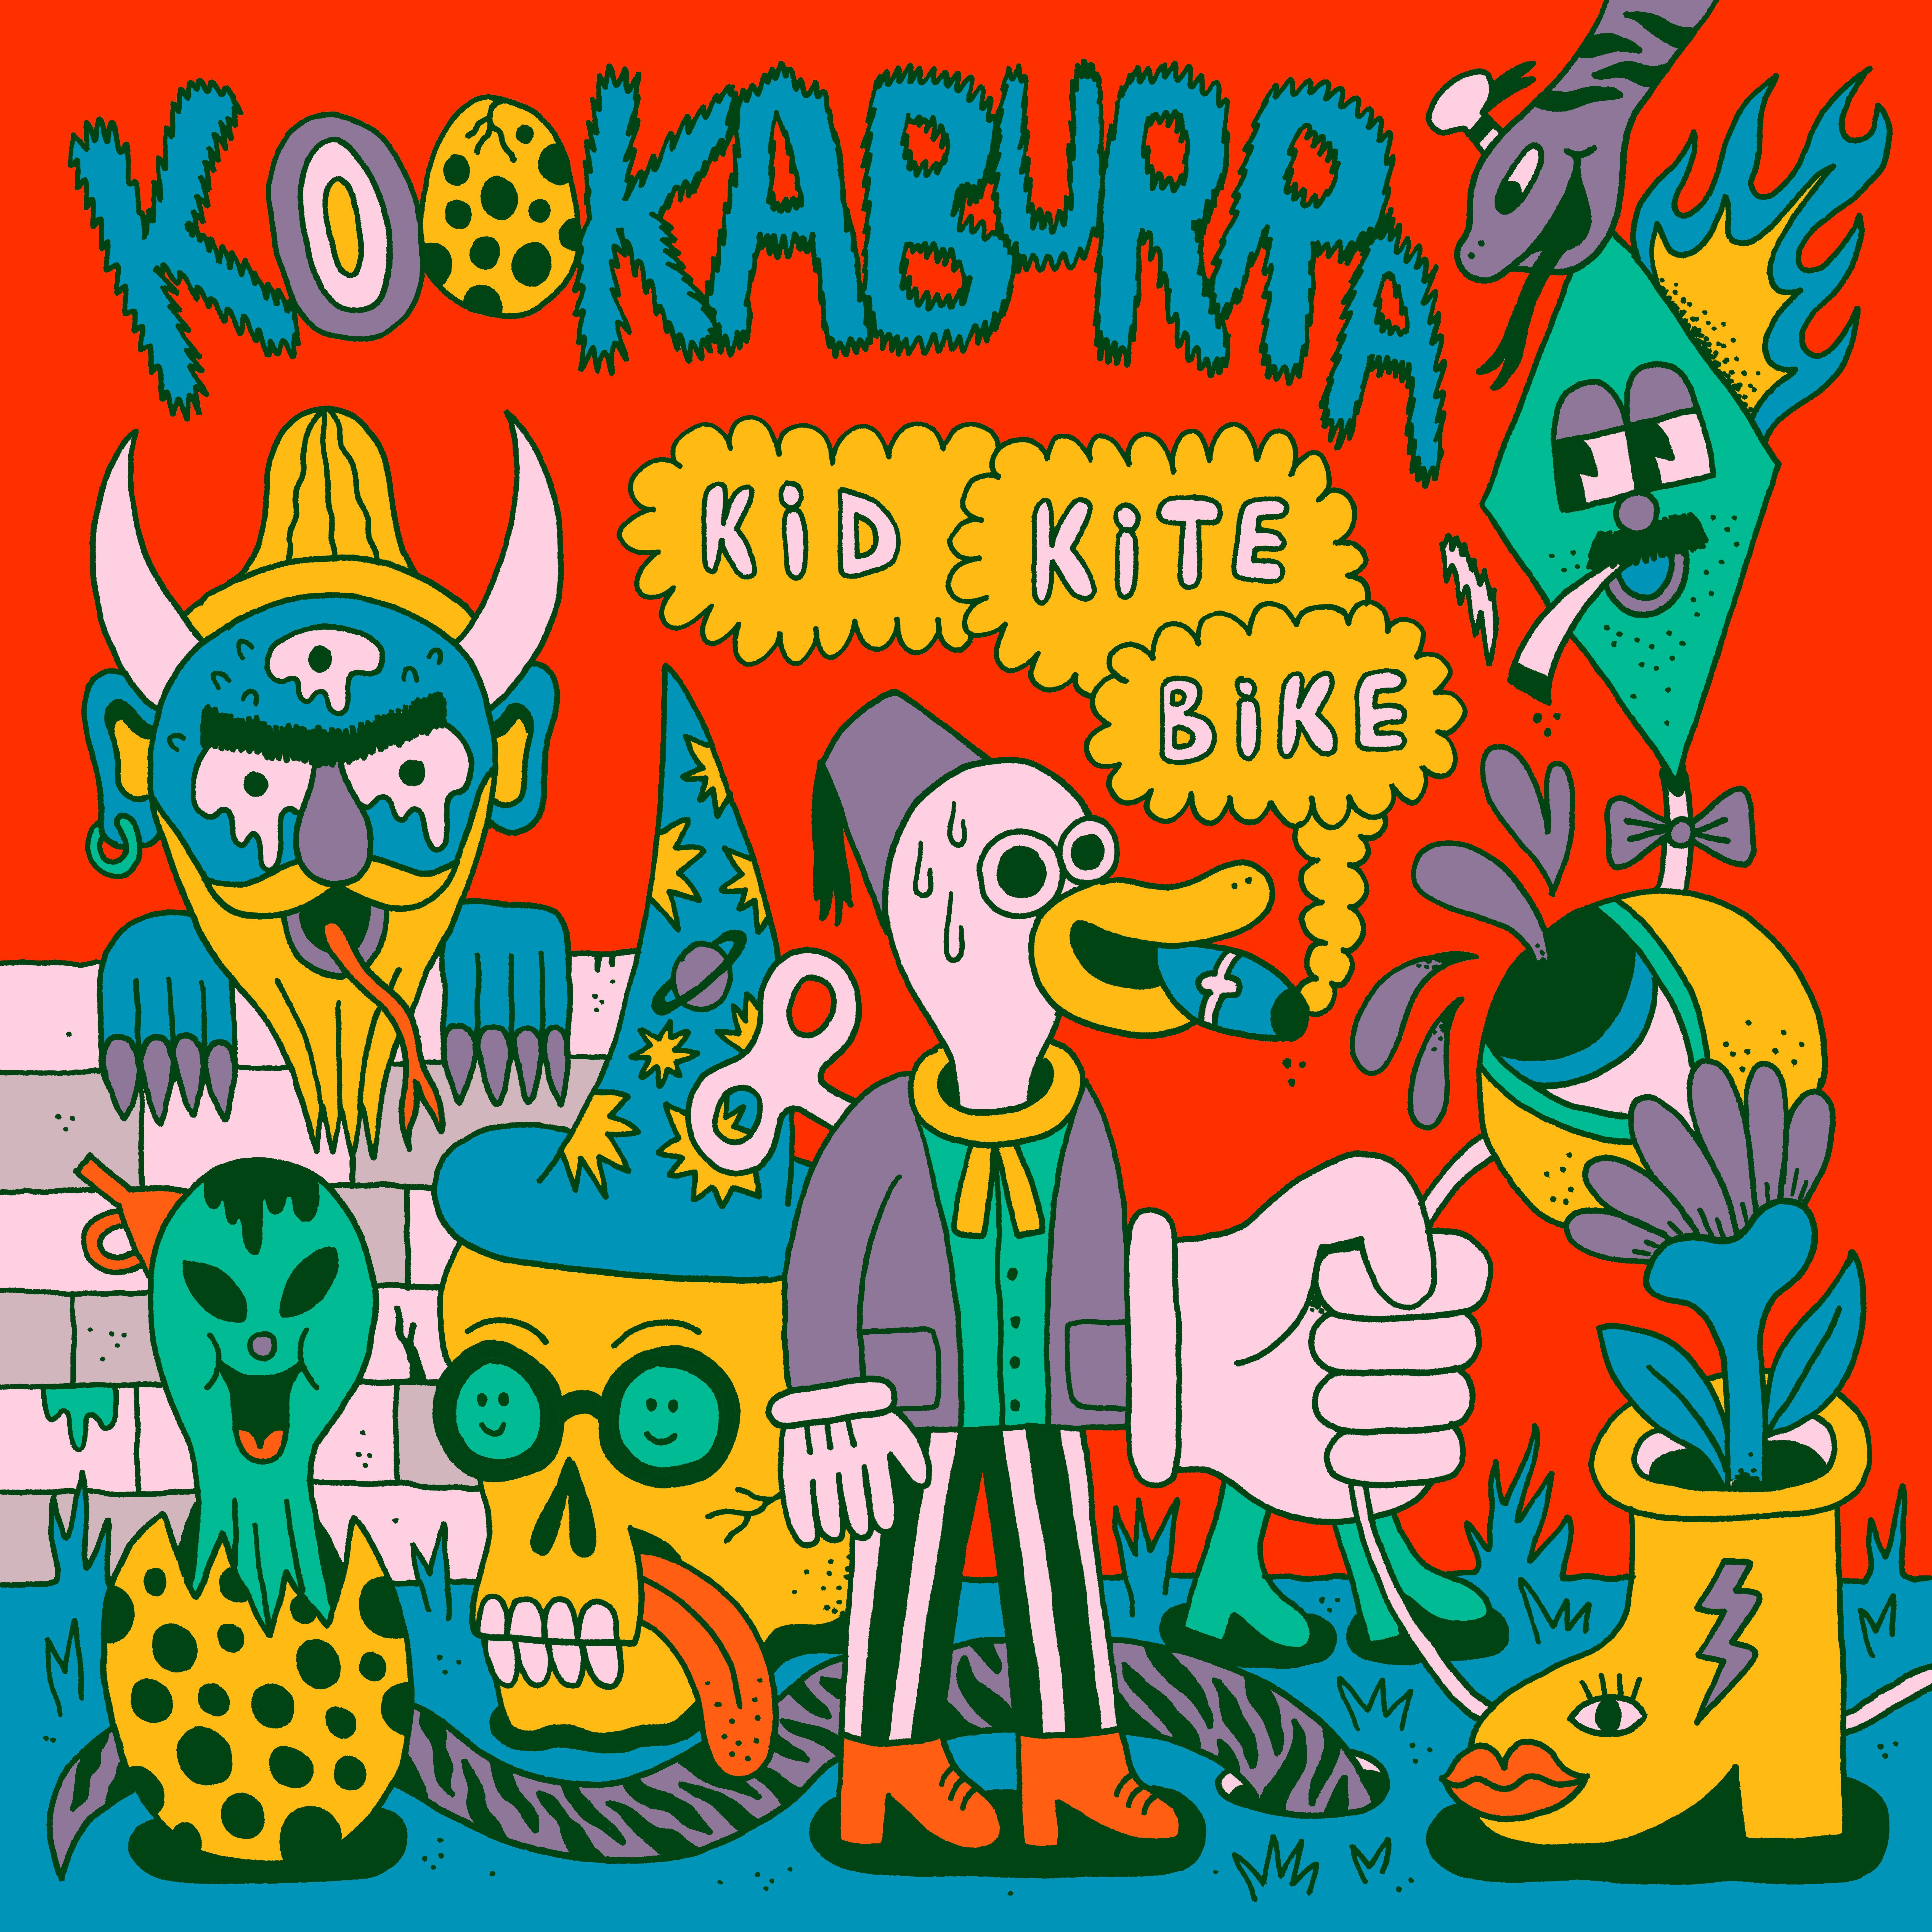 Kookaburra - KidKiteBike front cover